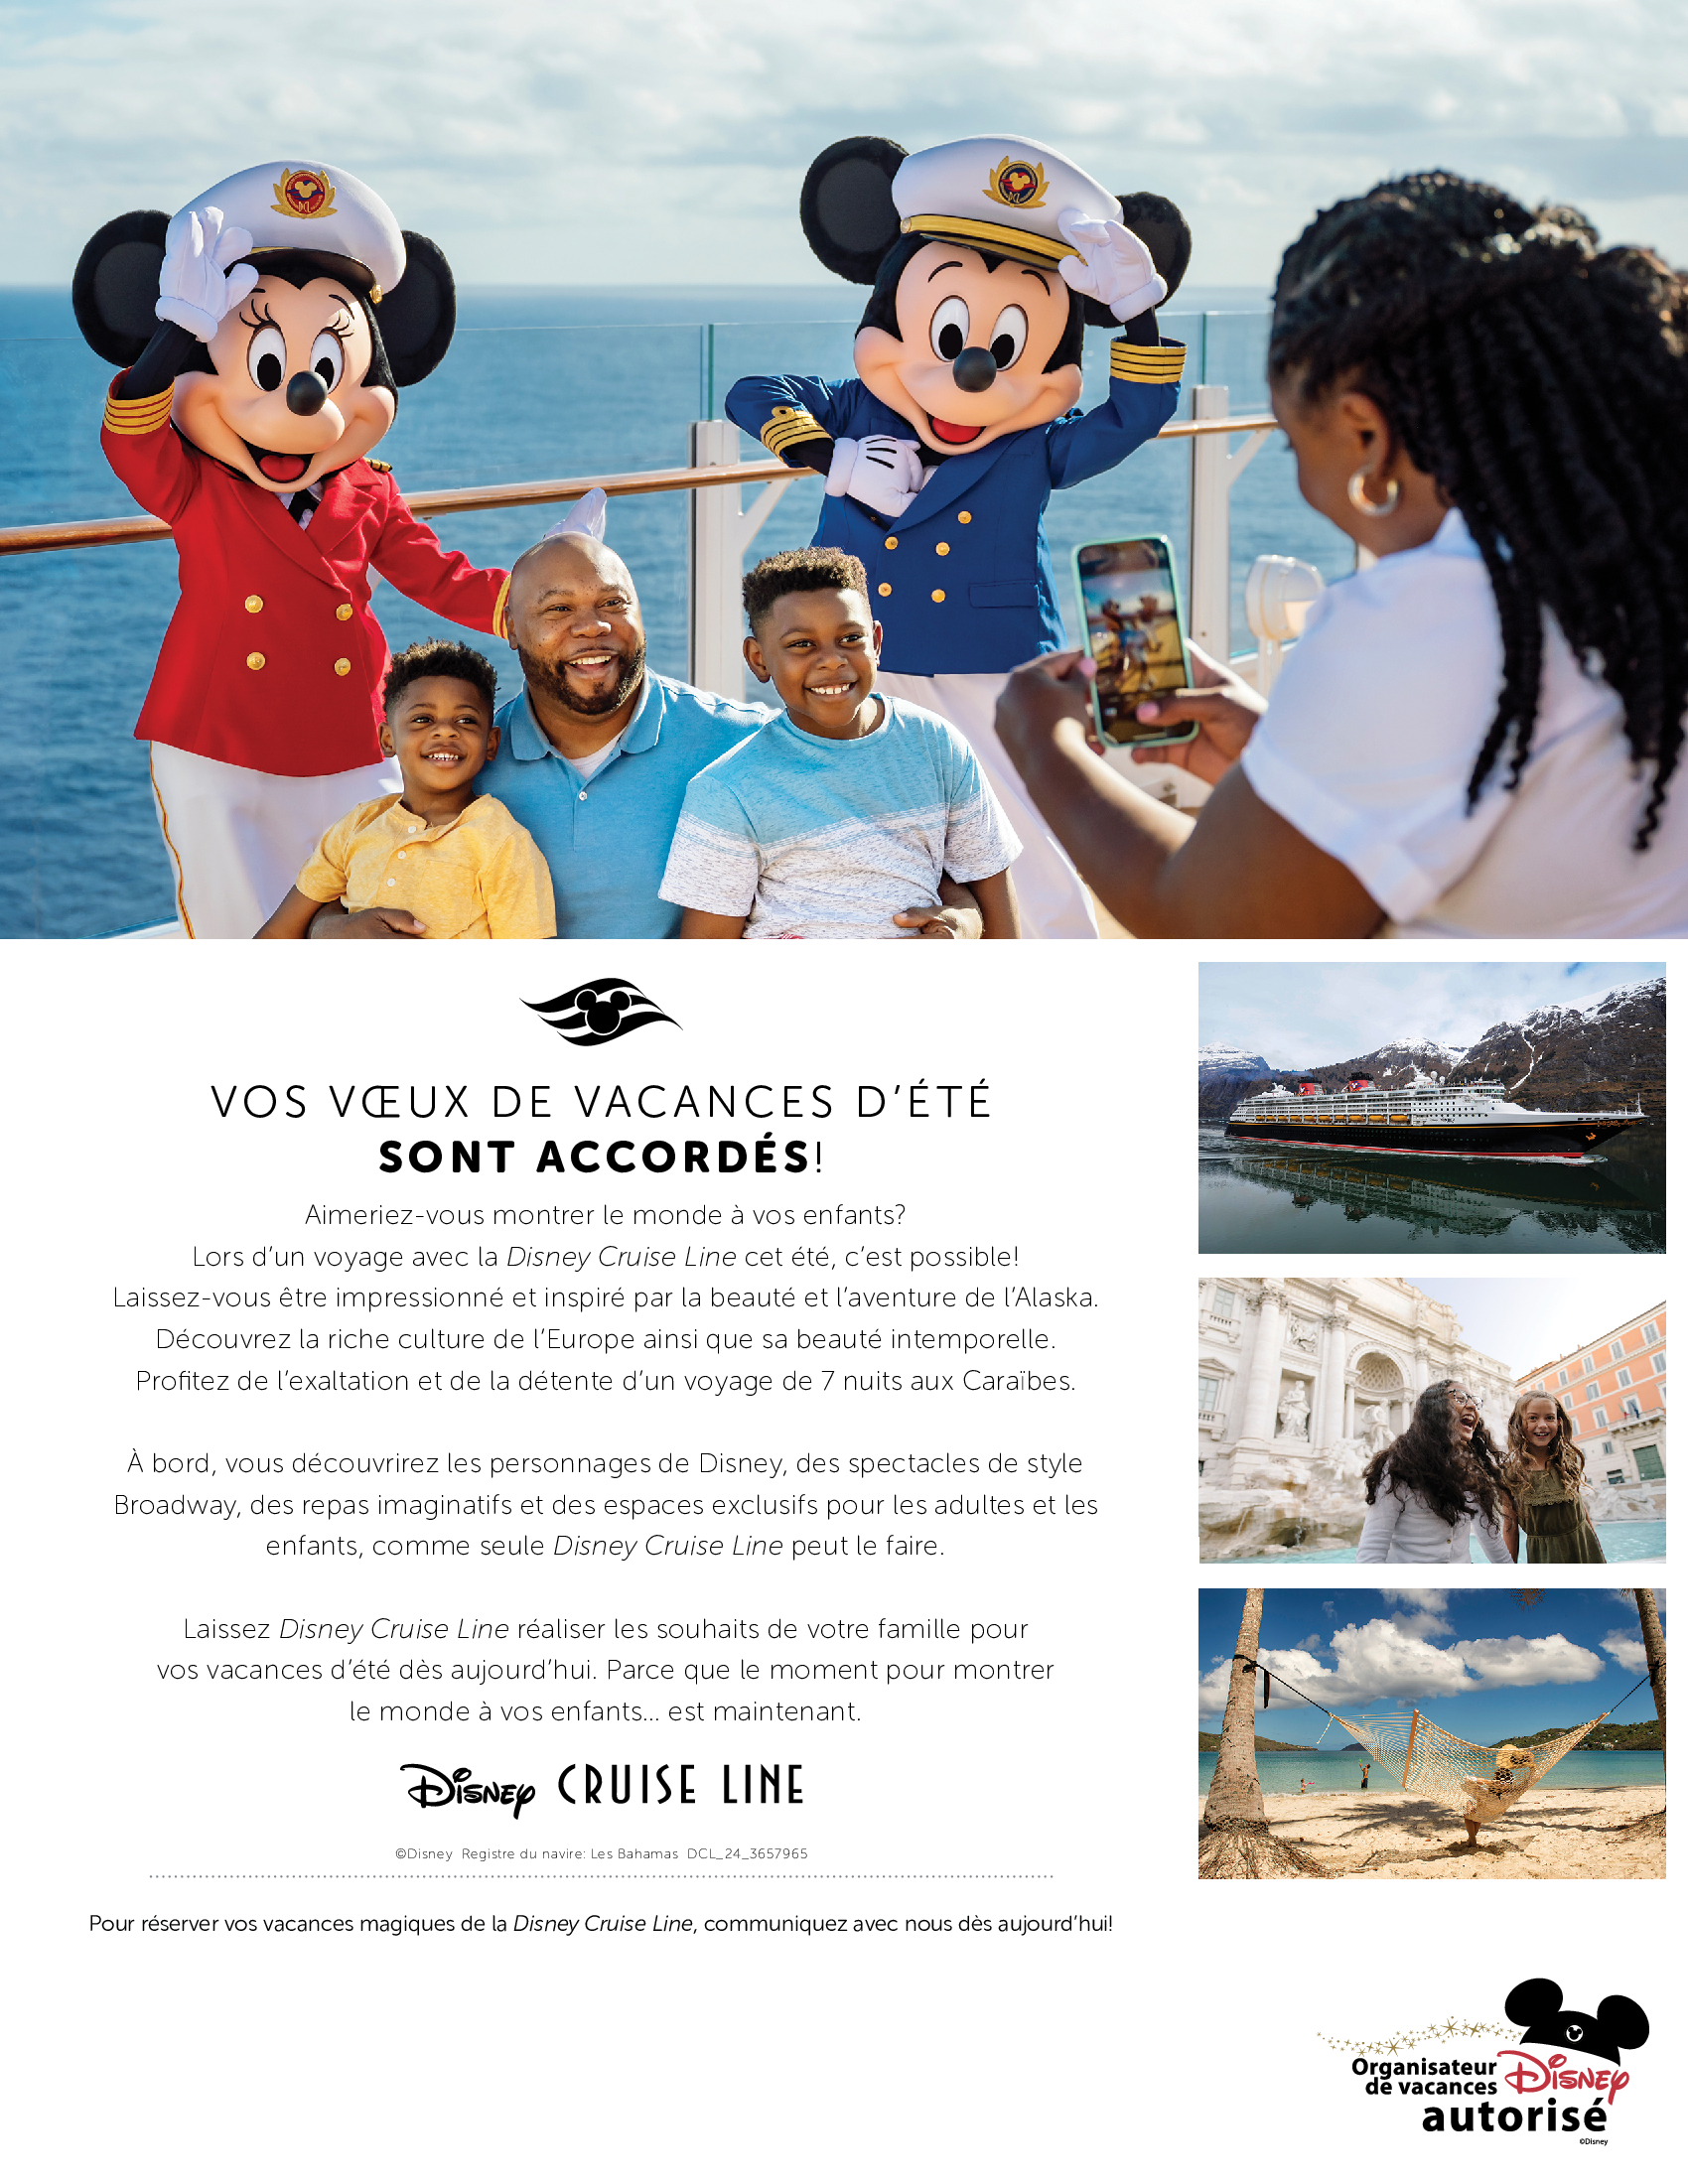 Disney Cruise Line - Vos vœux de vacances d'été sont accordés!